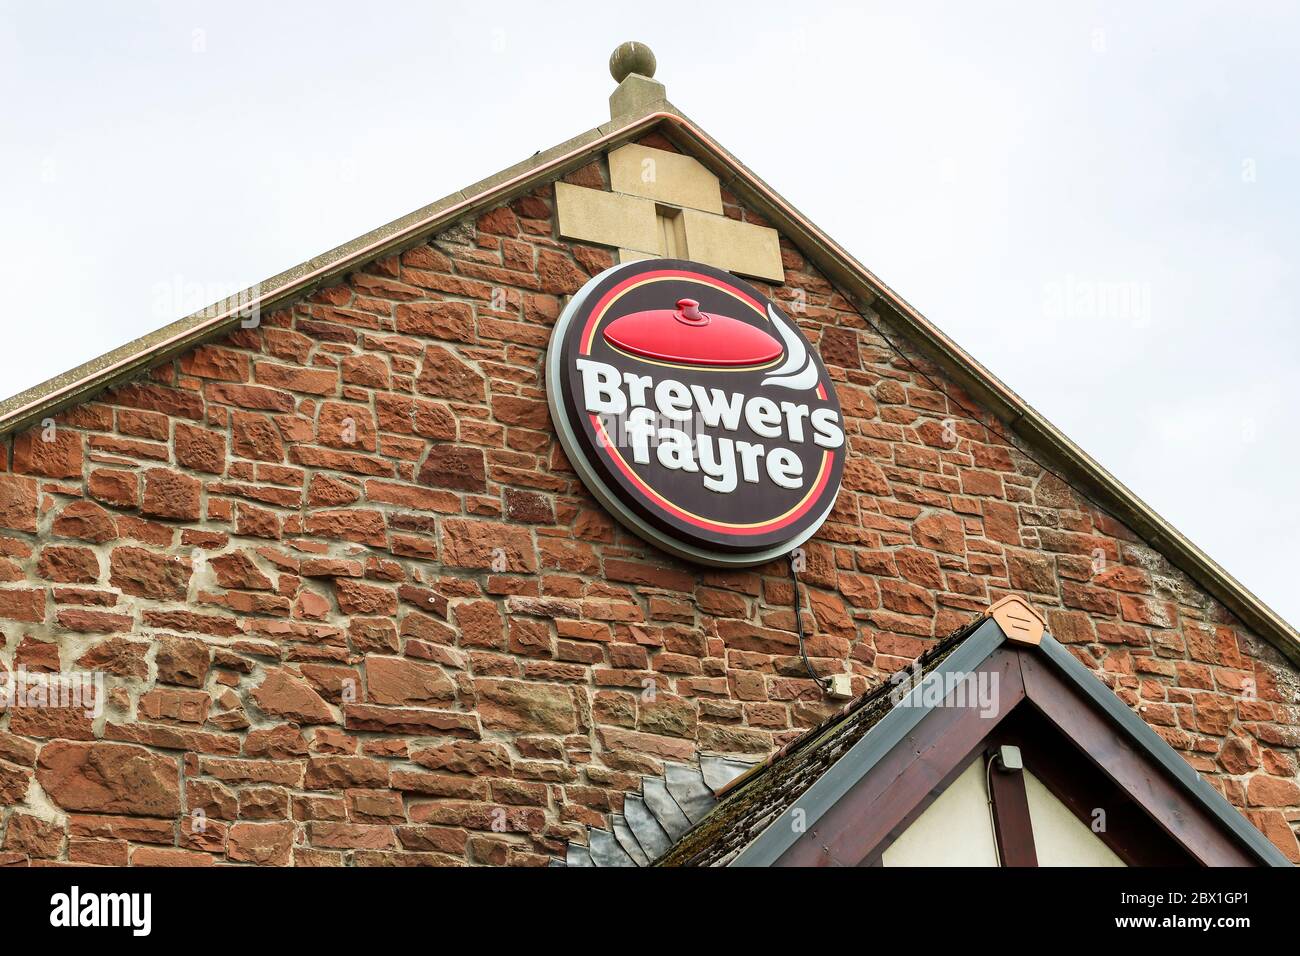 Logo du restaurant Brewers Fayre, au-dessus d'un point de vente de produits alimentaires, Prestwick, Écosse, Royaume-Uni Banque D'Images